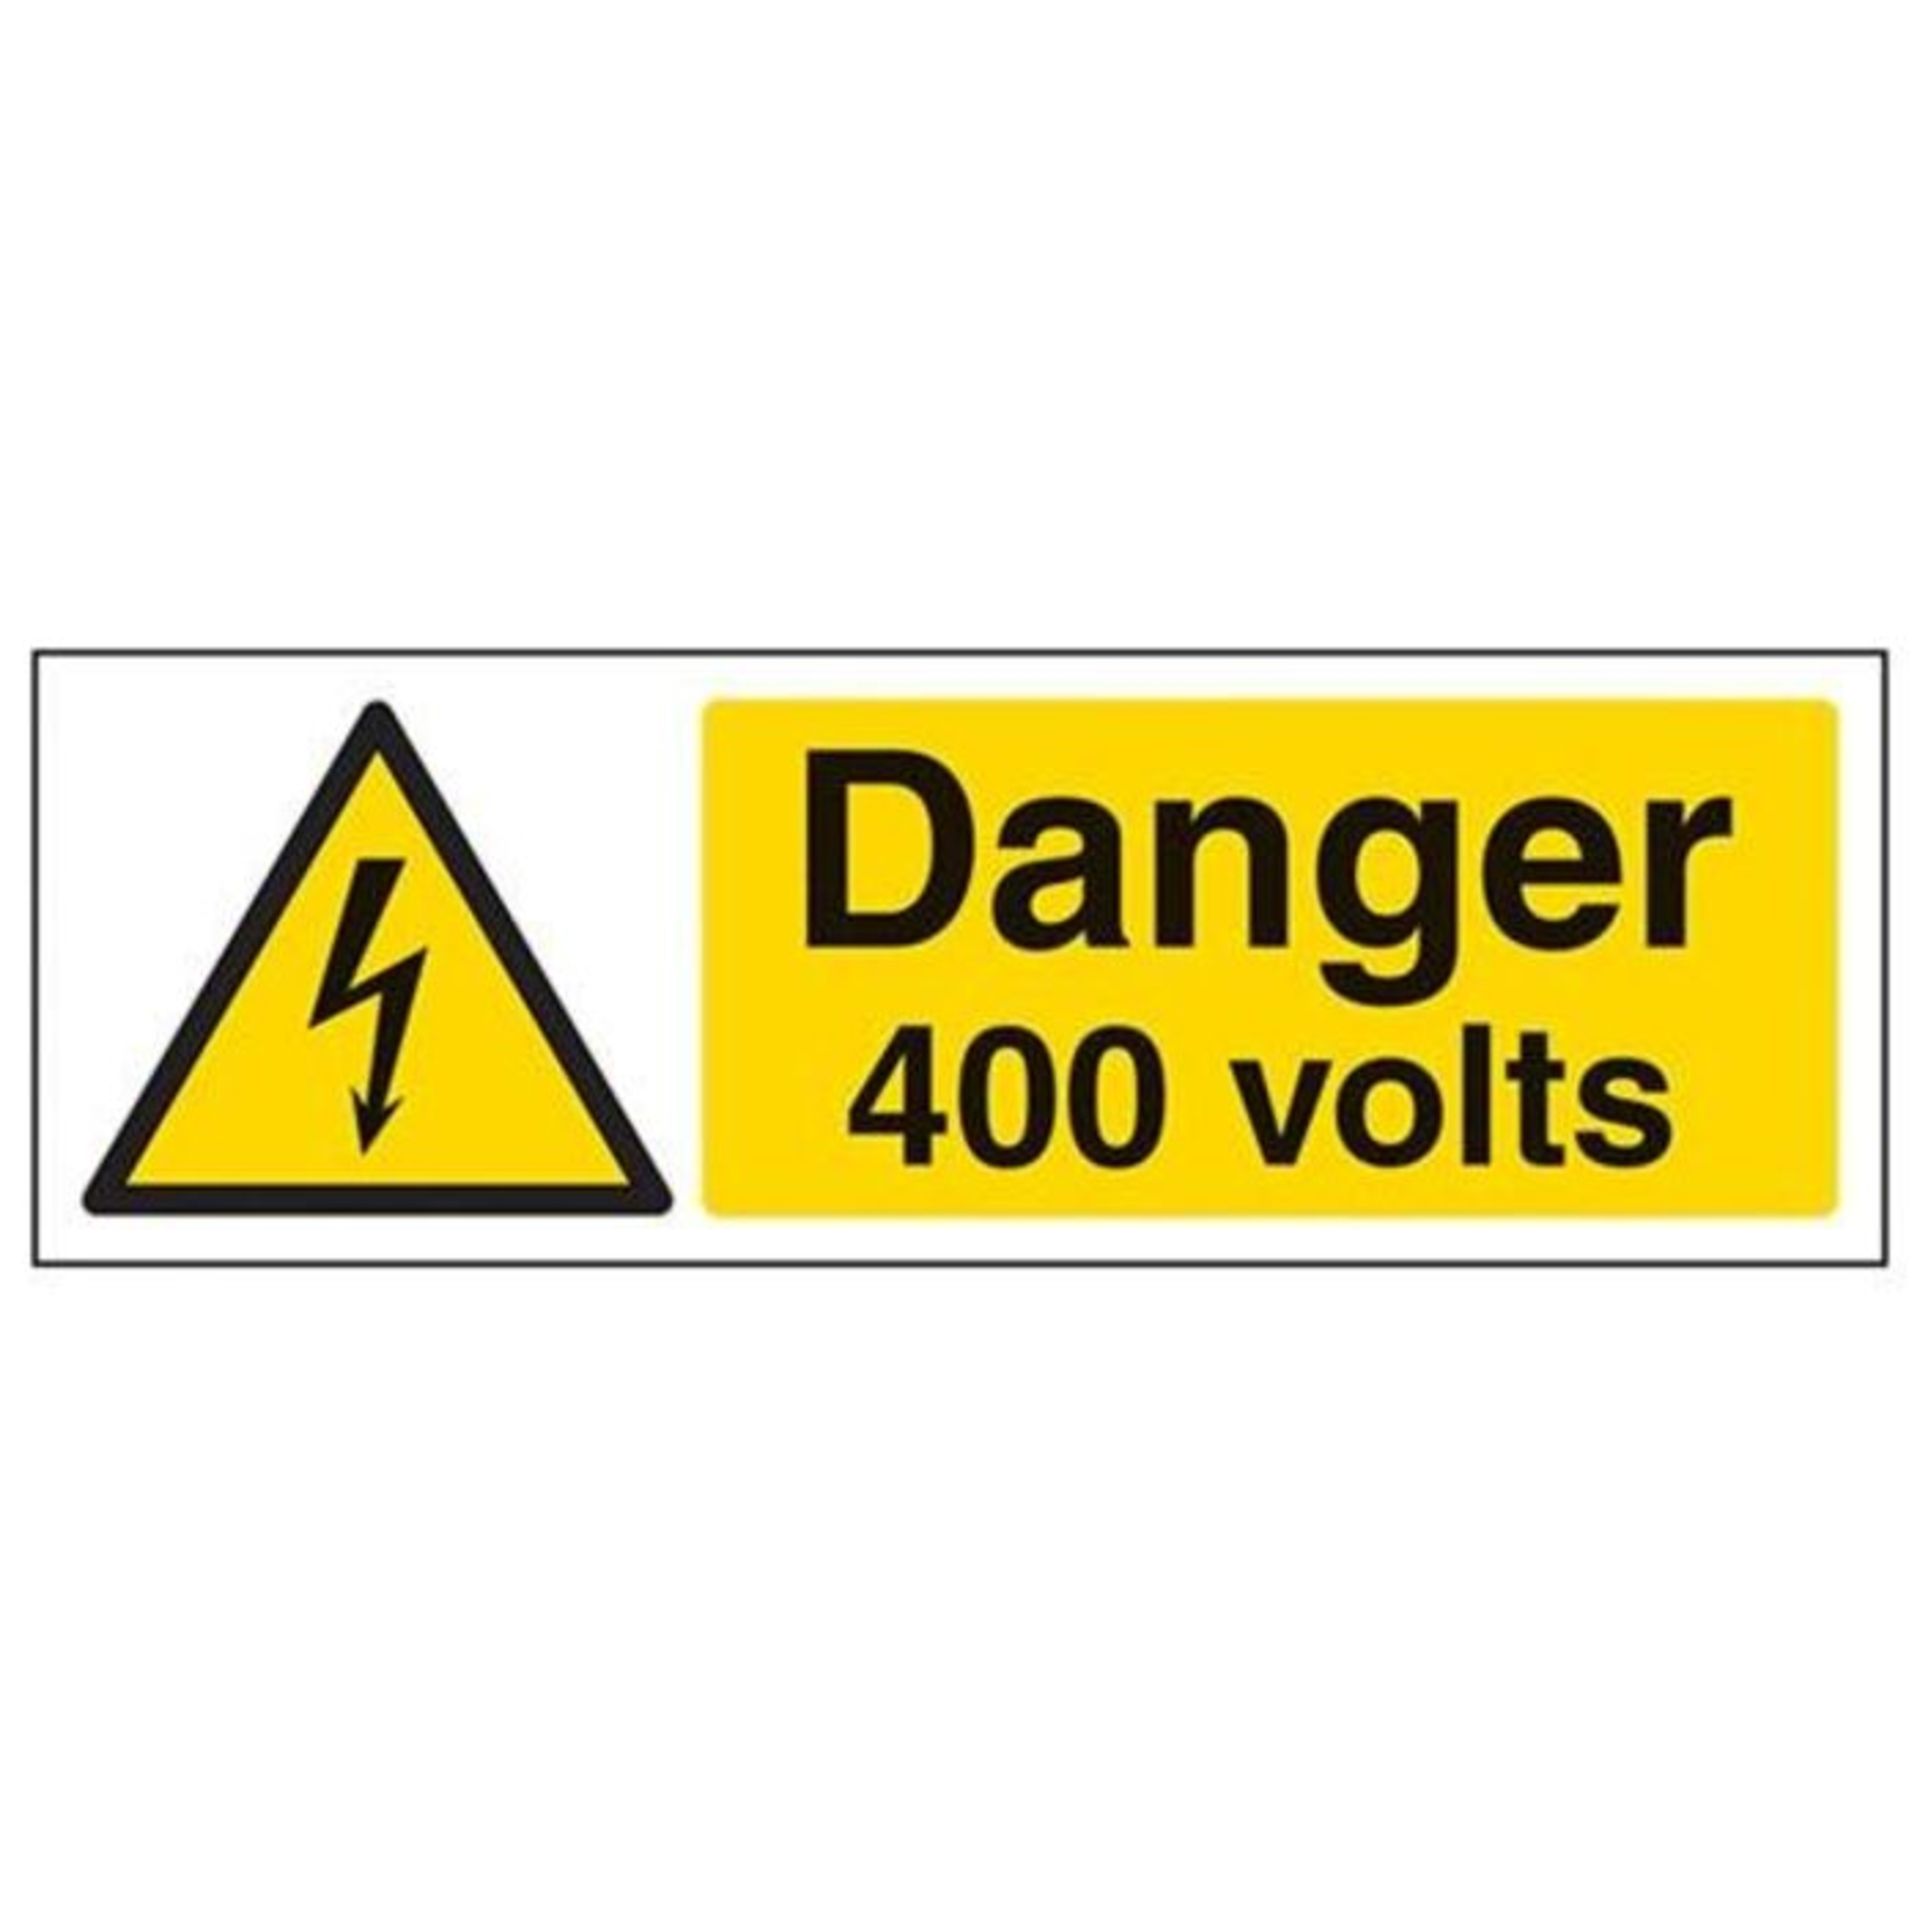 VSafety Danger, 400 Volts Warning Sign - Landscape - 300mm x 100mm - Self Adhesive Vin